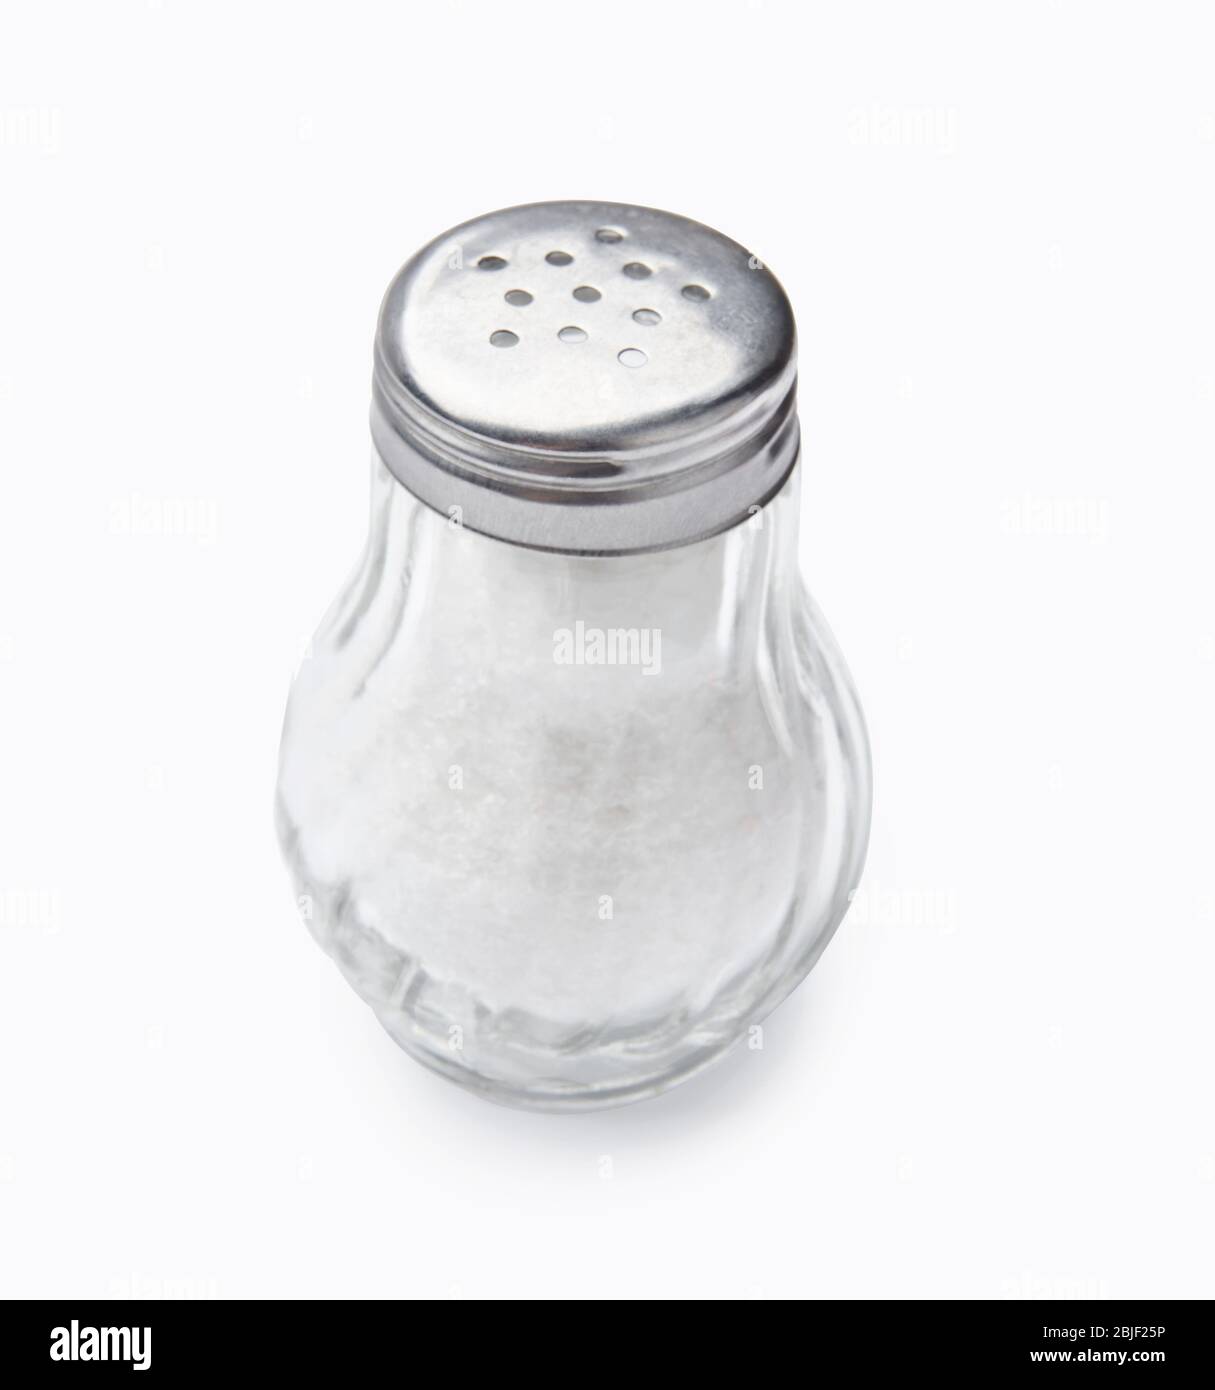 Agitateur à sel isolé sur fond blanc. Sel dans une bouteille de verre. Banque D'Images